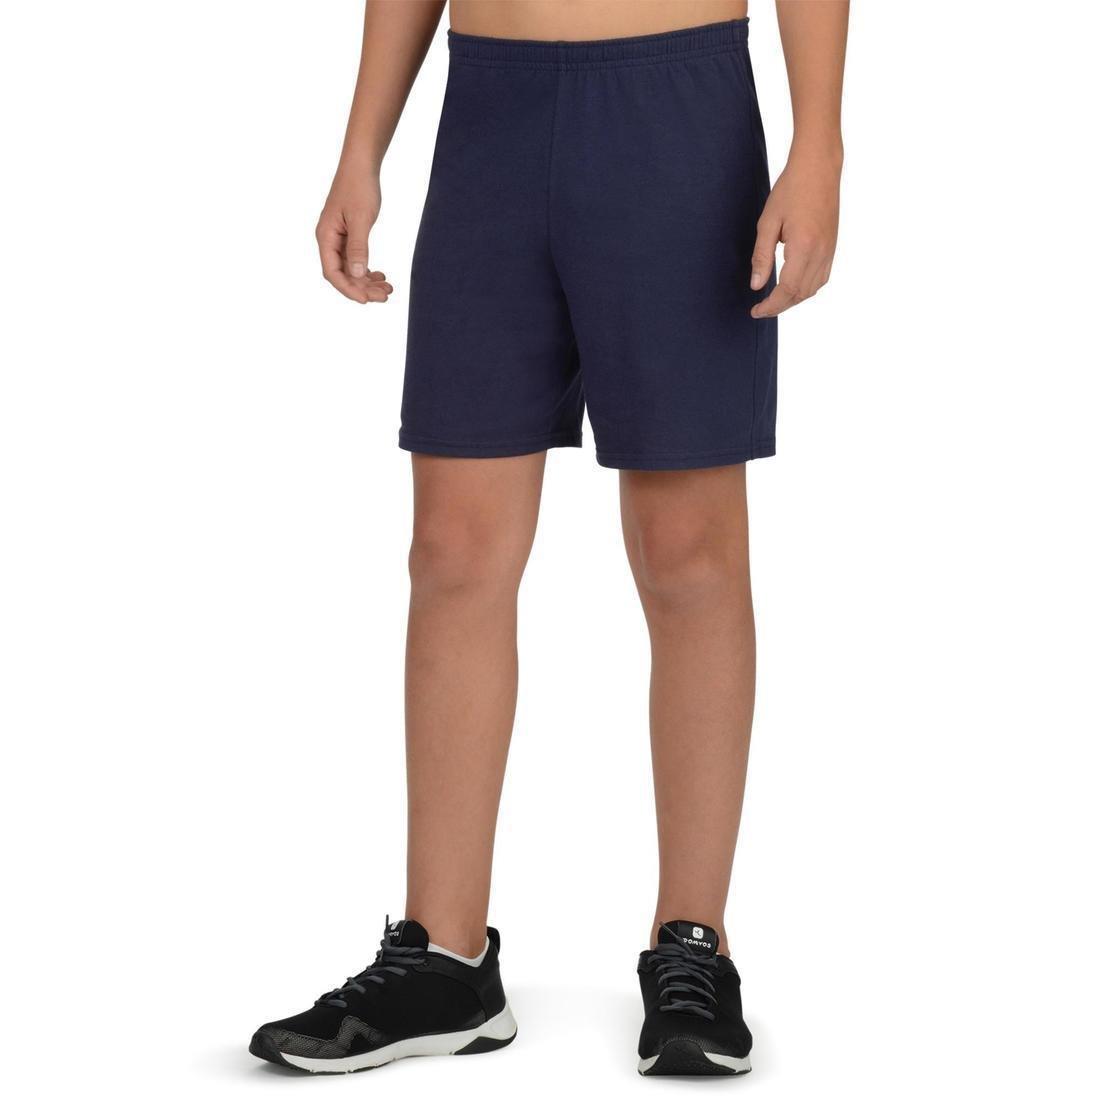 DOMYOS - Kids' Basic Cotton Shorts, Navy